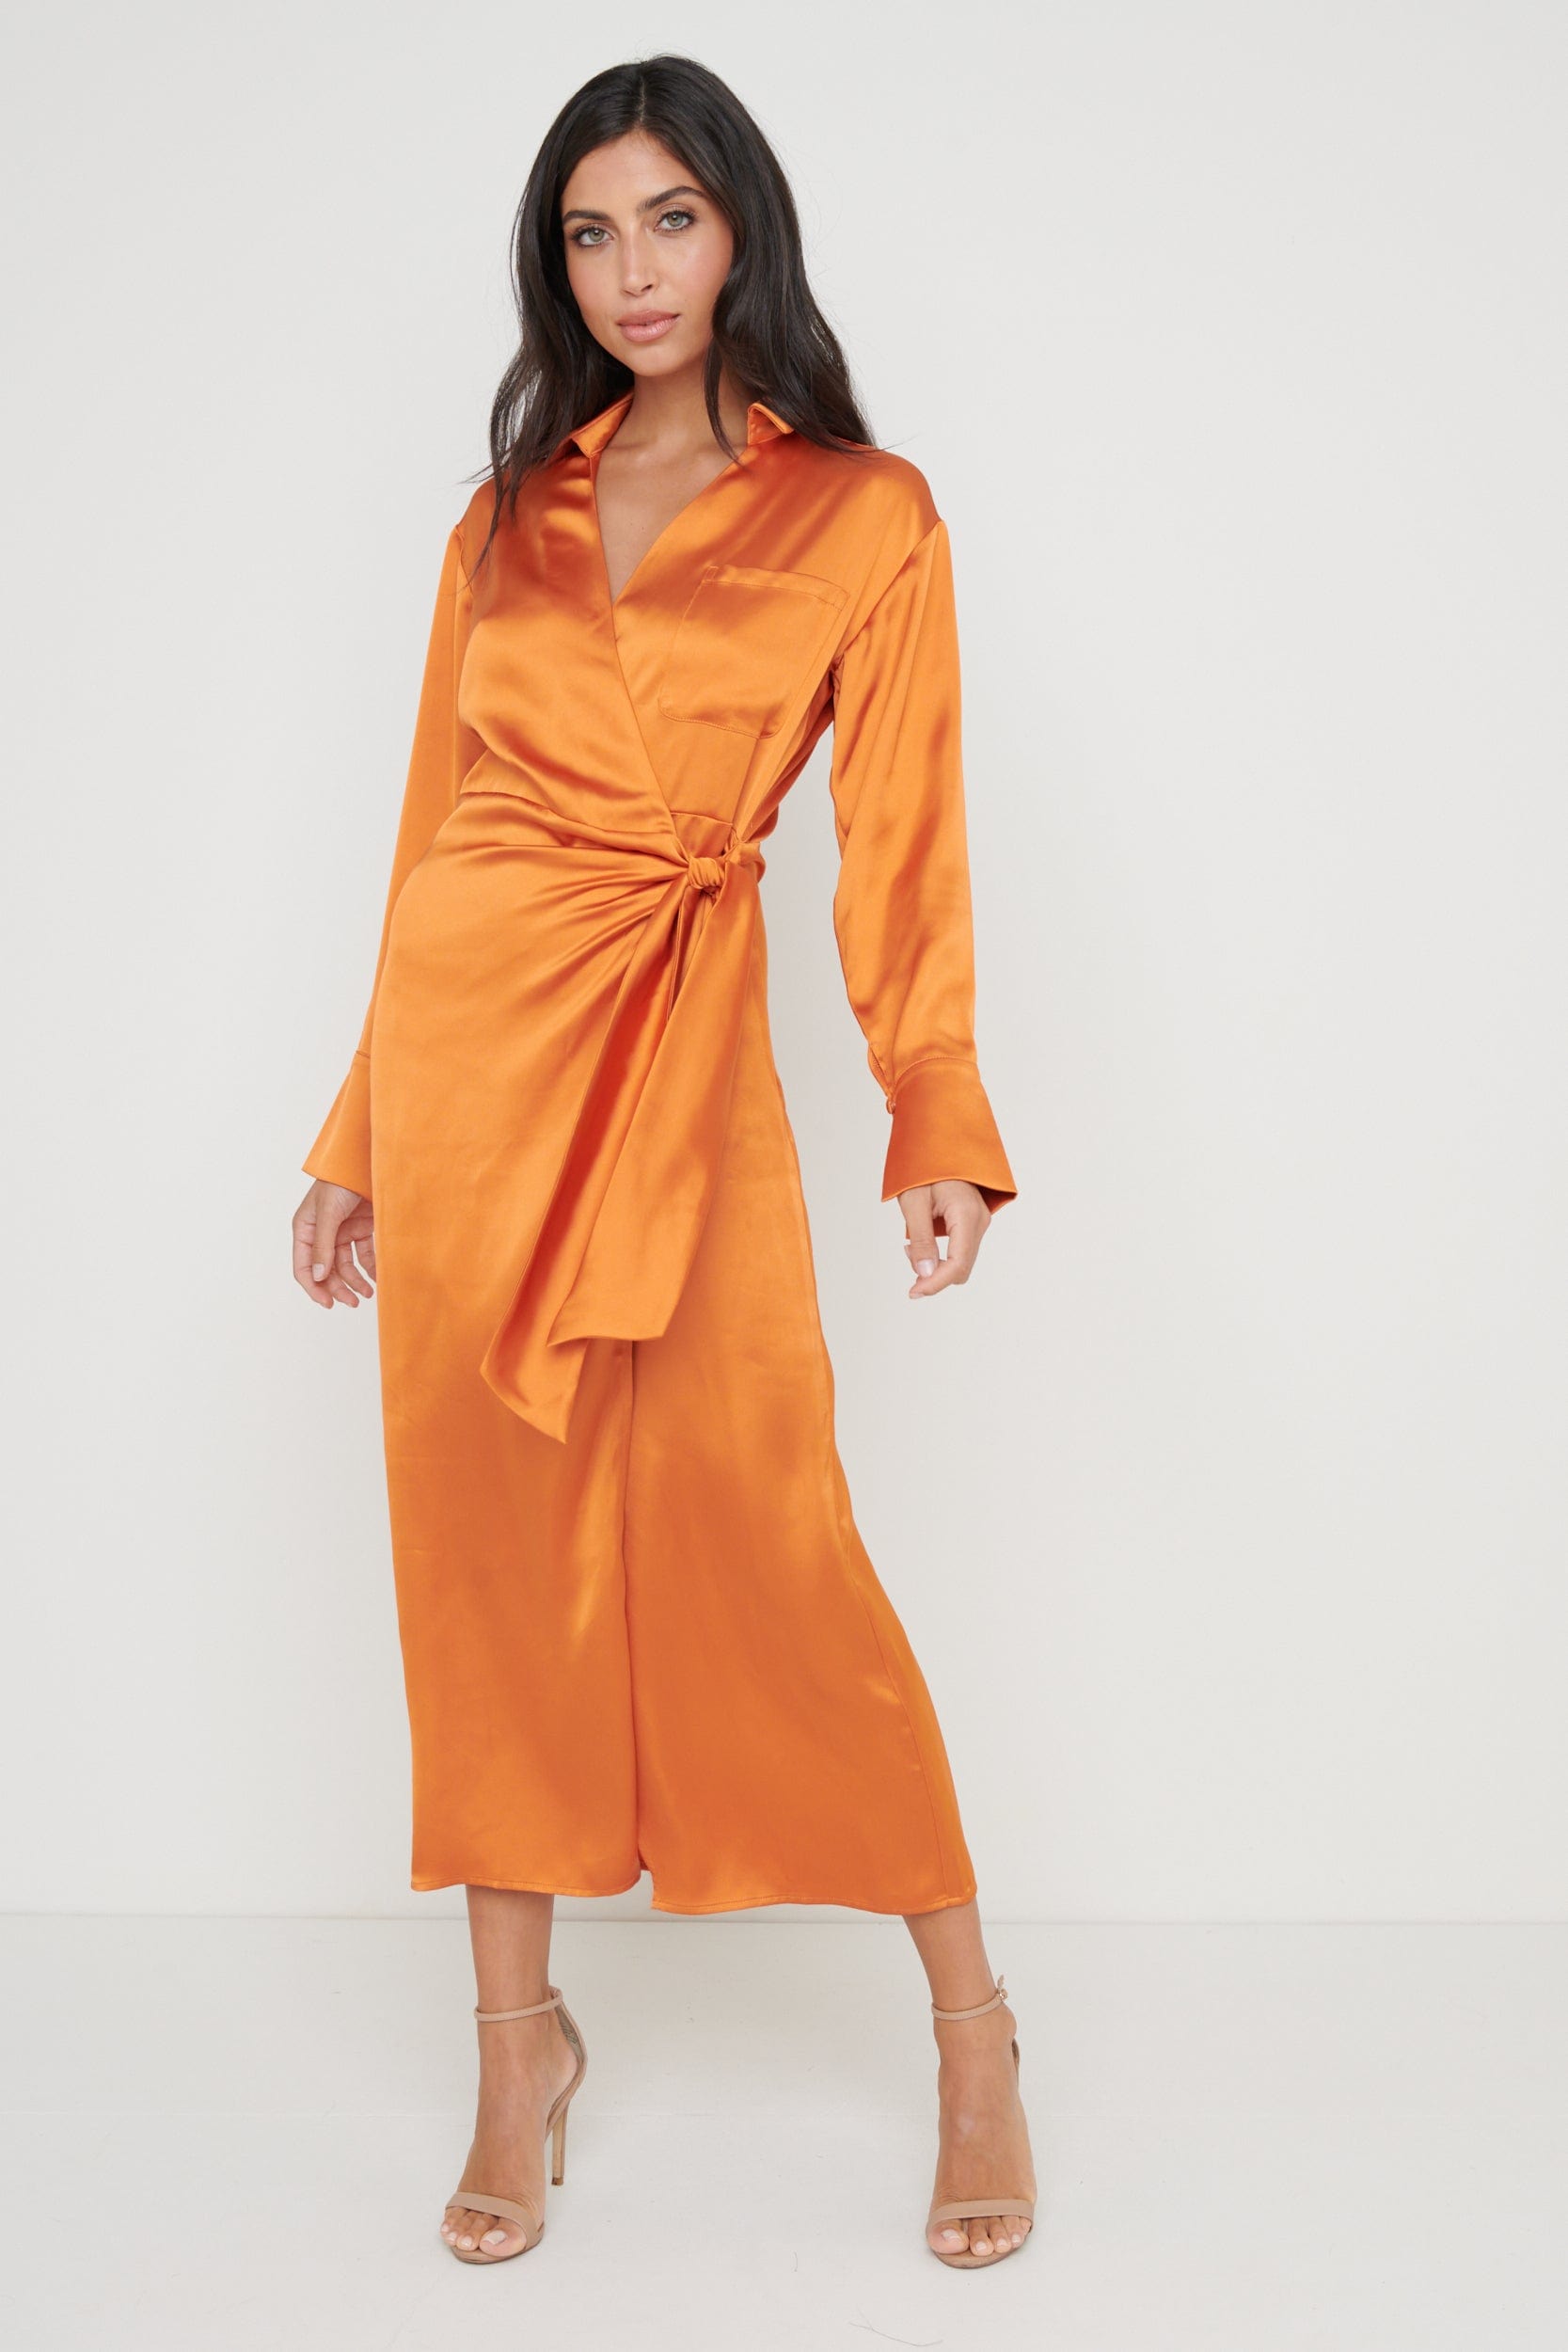 Ronnie Satin Wrap Dress - Orange, 12